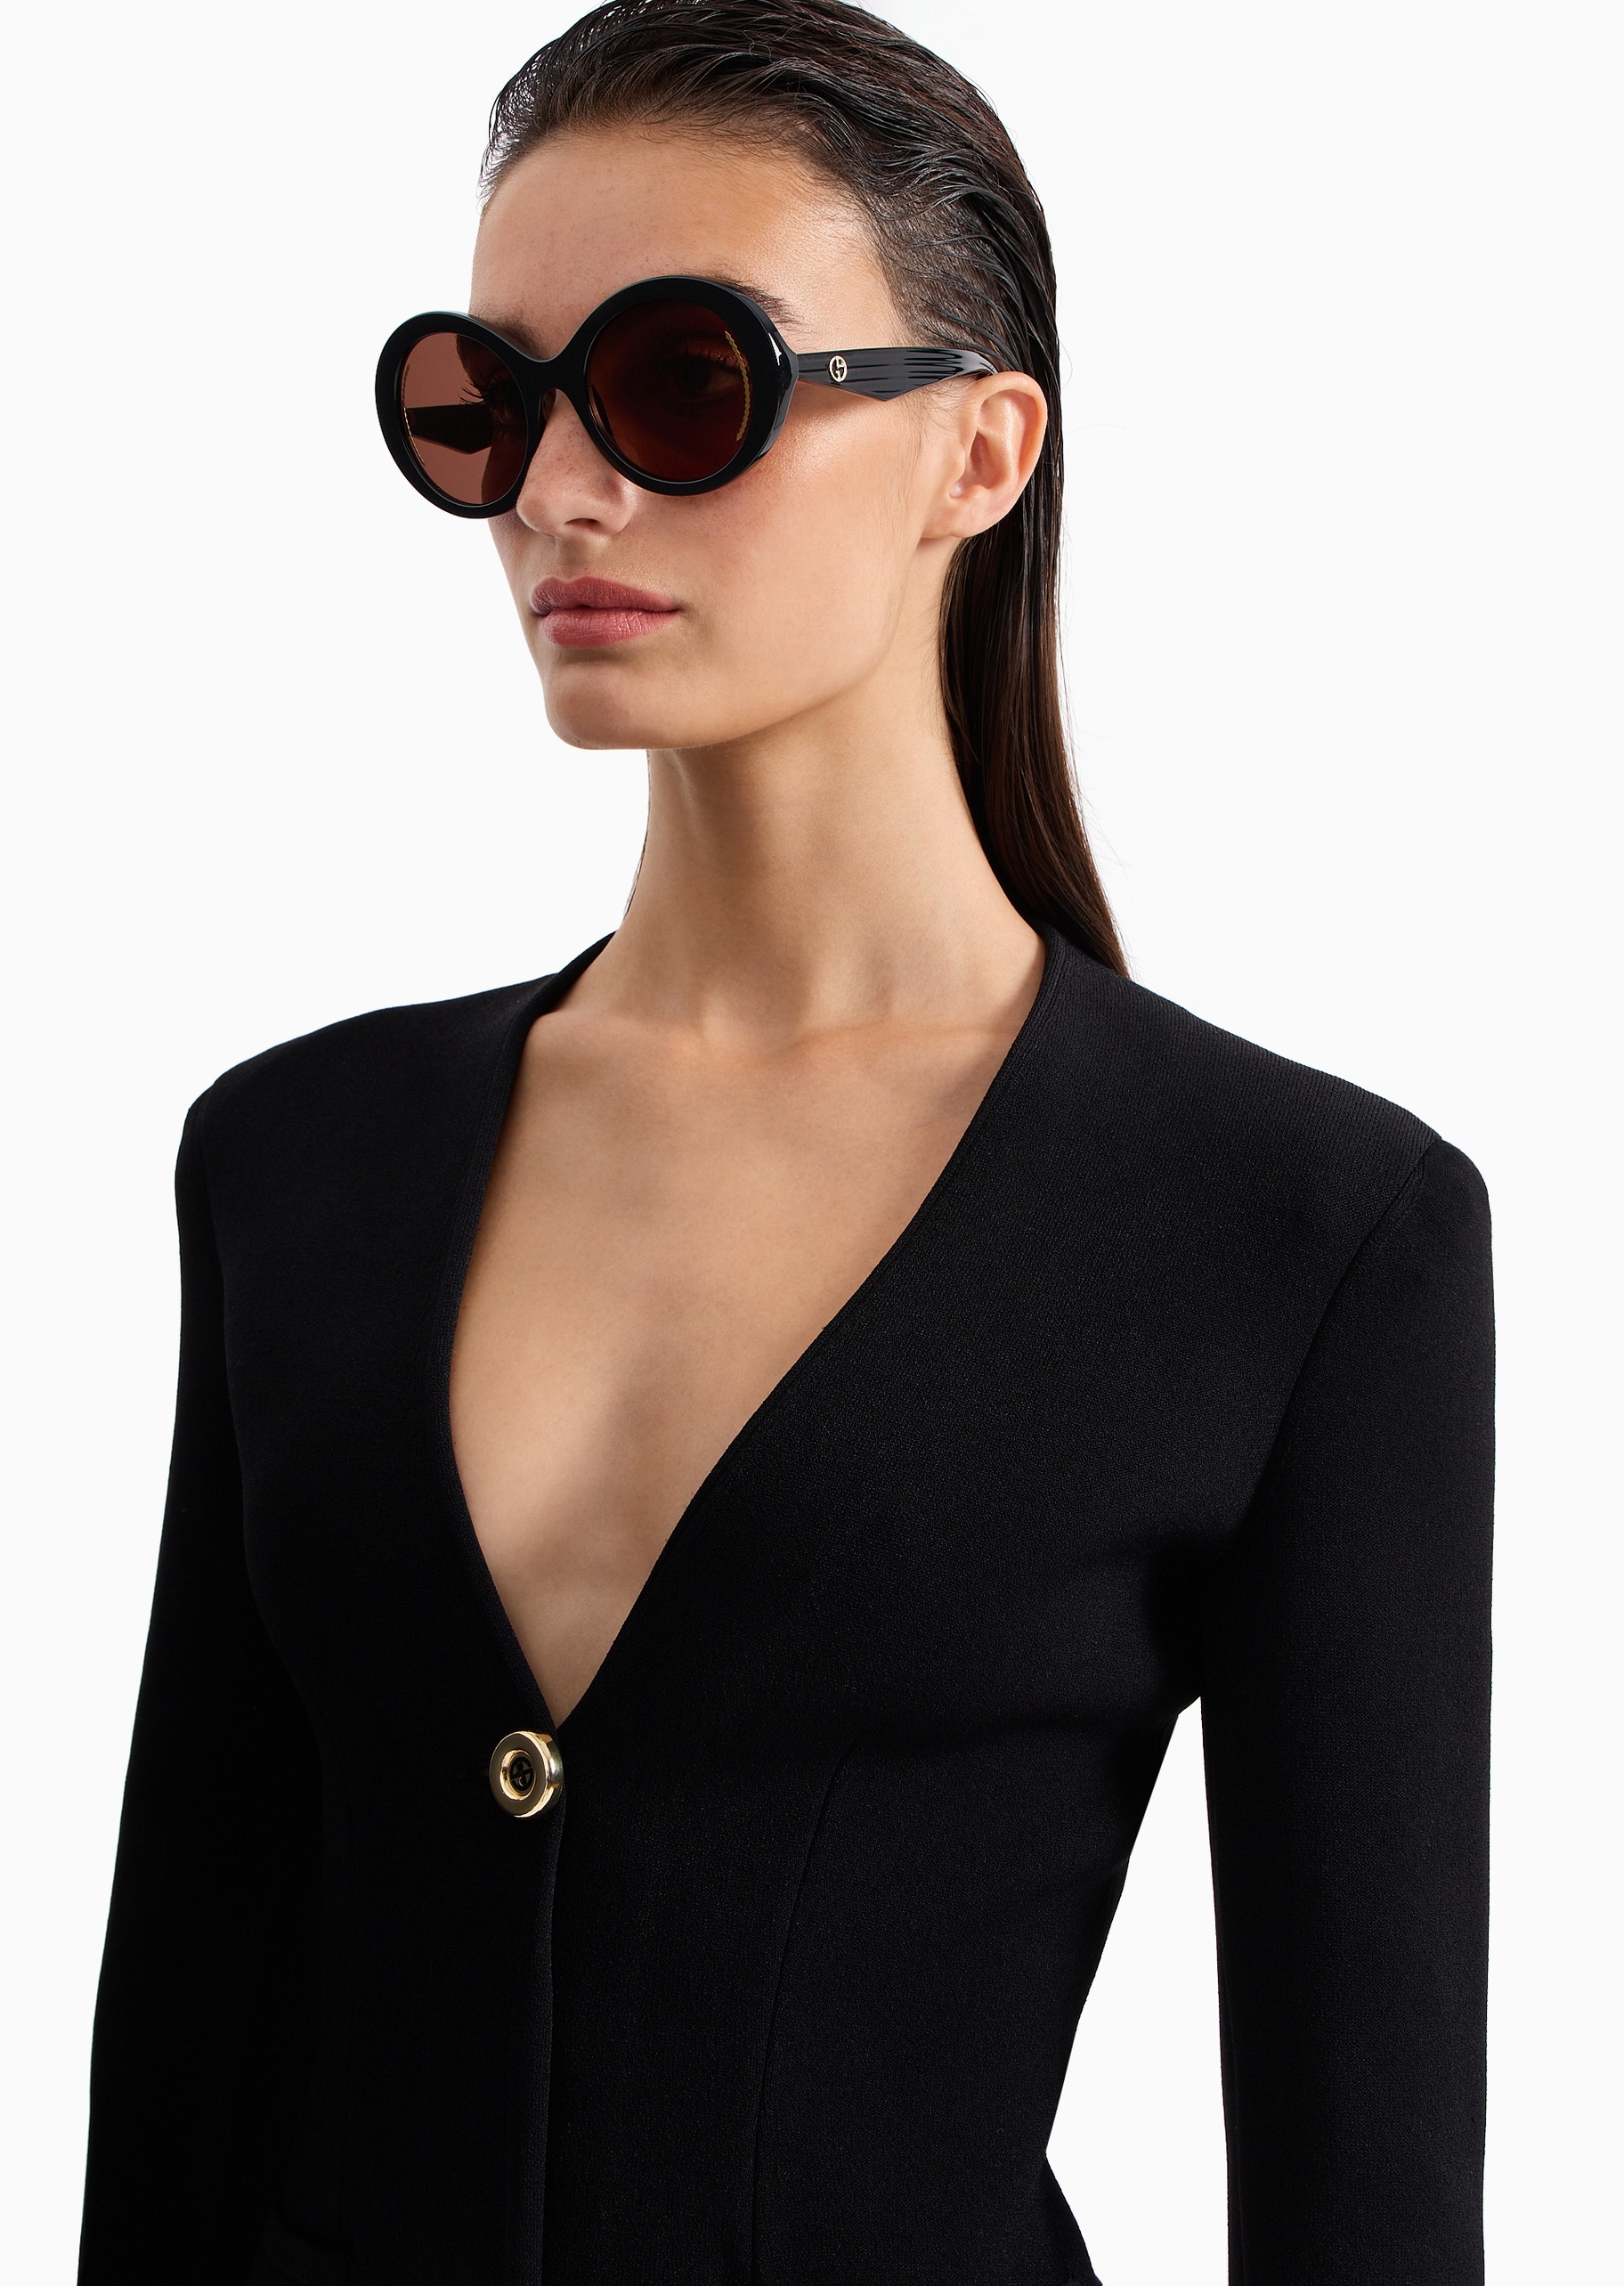 Giorgio Armani 女士加粗镜腿椭圆框时尚潮流太阳眼镜